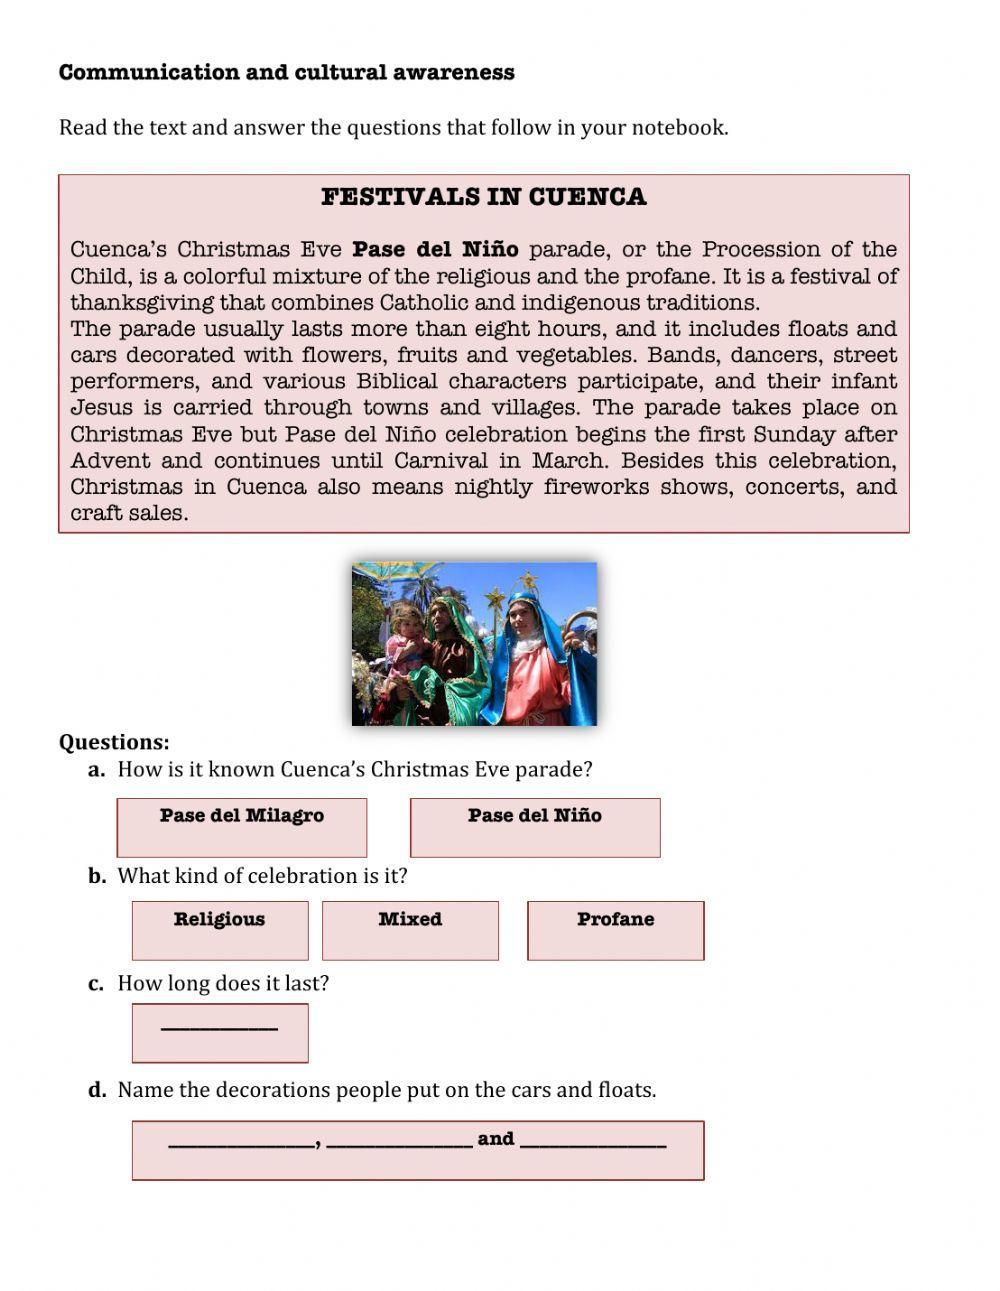 Festivals in Cuenca